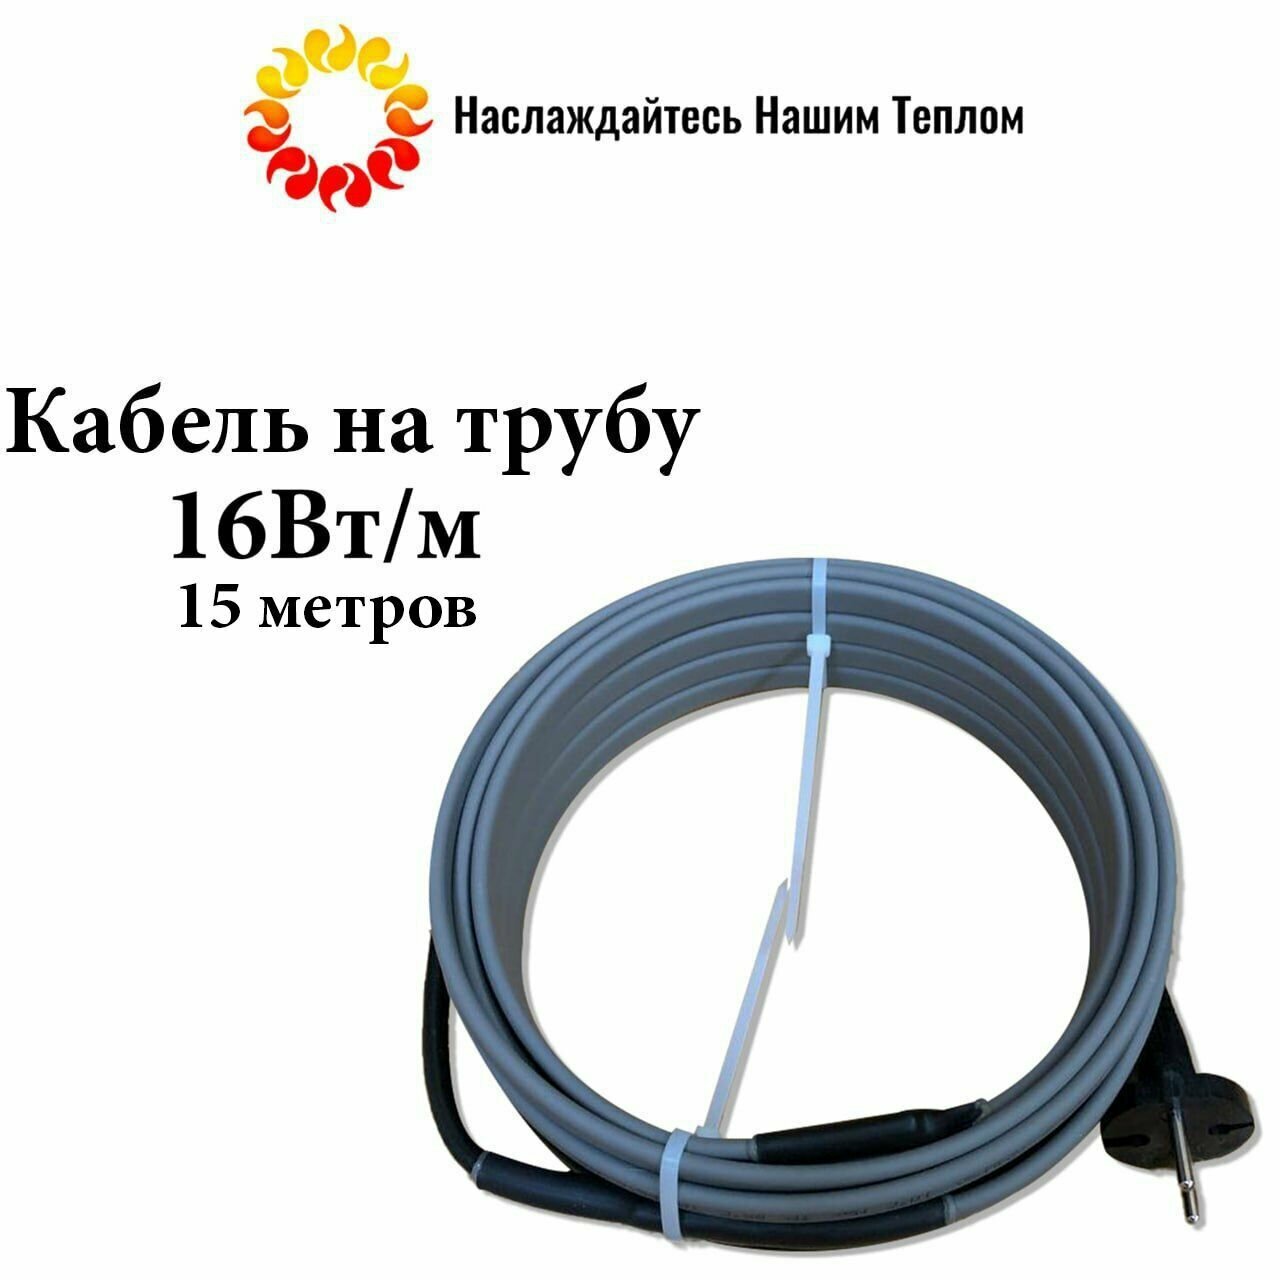 Саморегулирующийся греющий кабель на трубу (наружный) для водопровода и канализации 16 Вт/м длина 15 метров